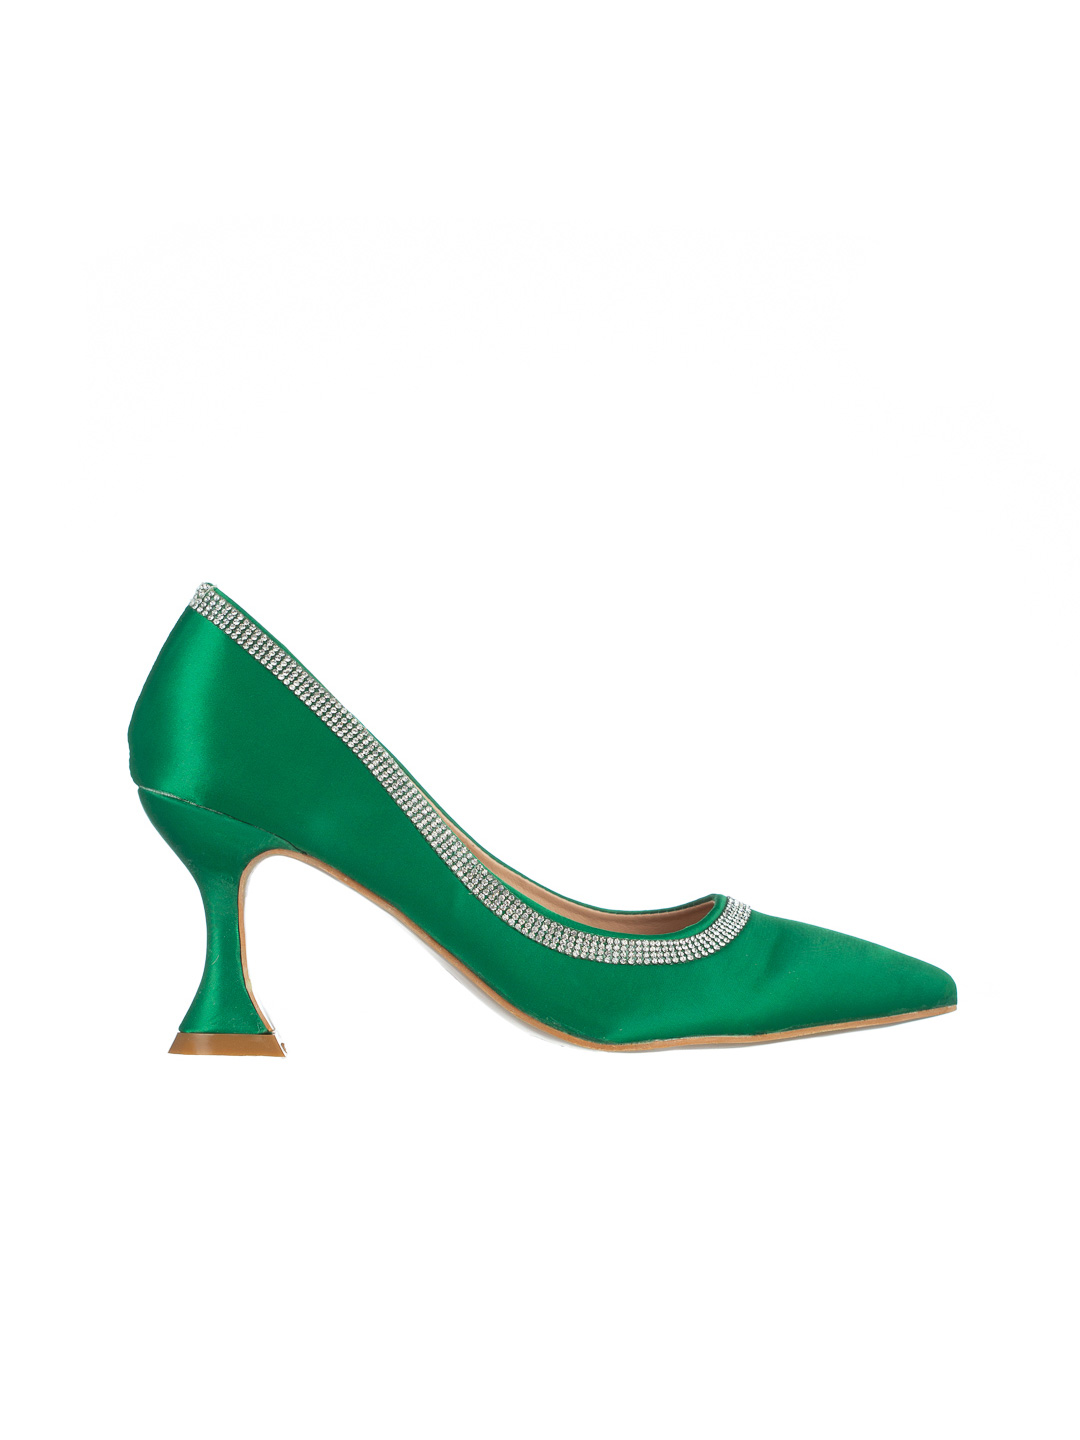 Pantofi dama verzi cu toc din material textil Tanica, 7 - Kalapod.net